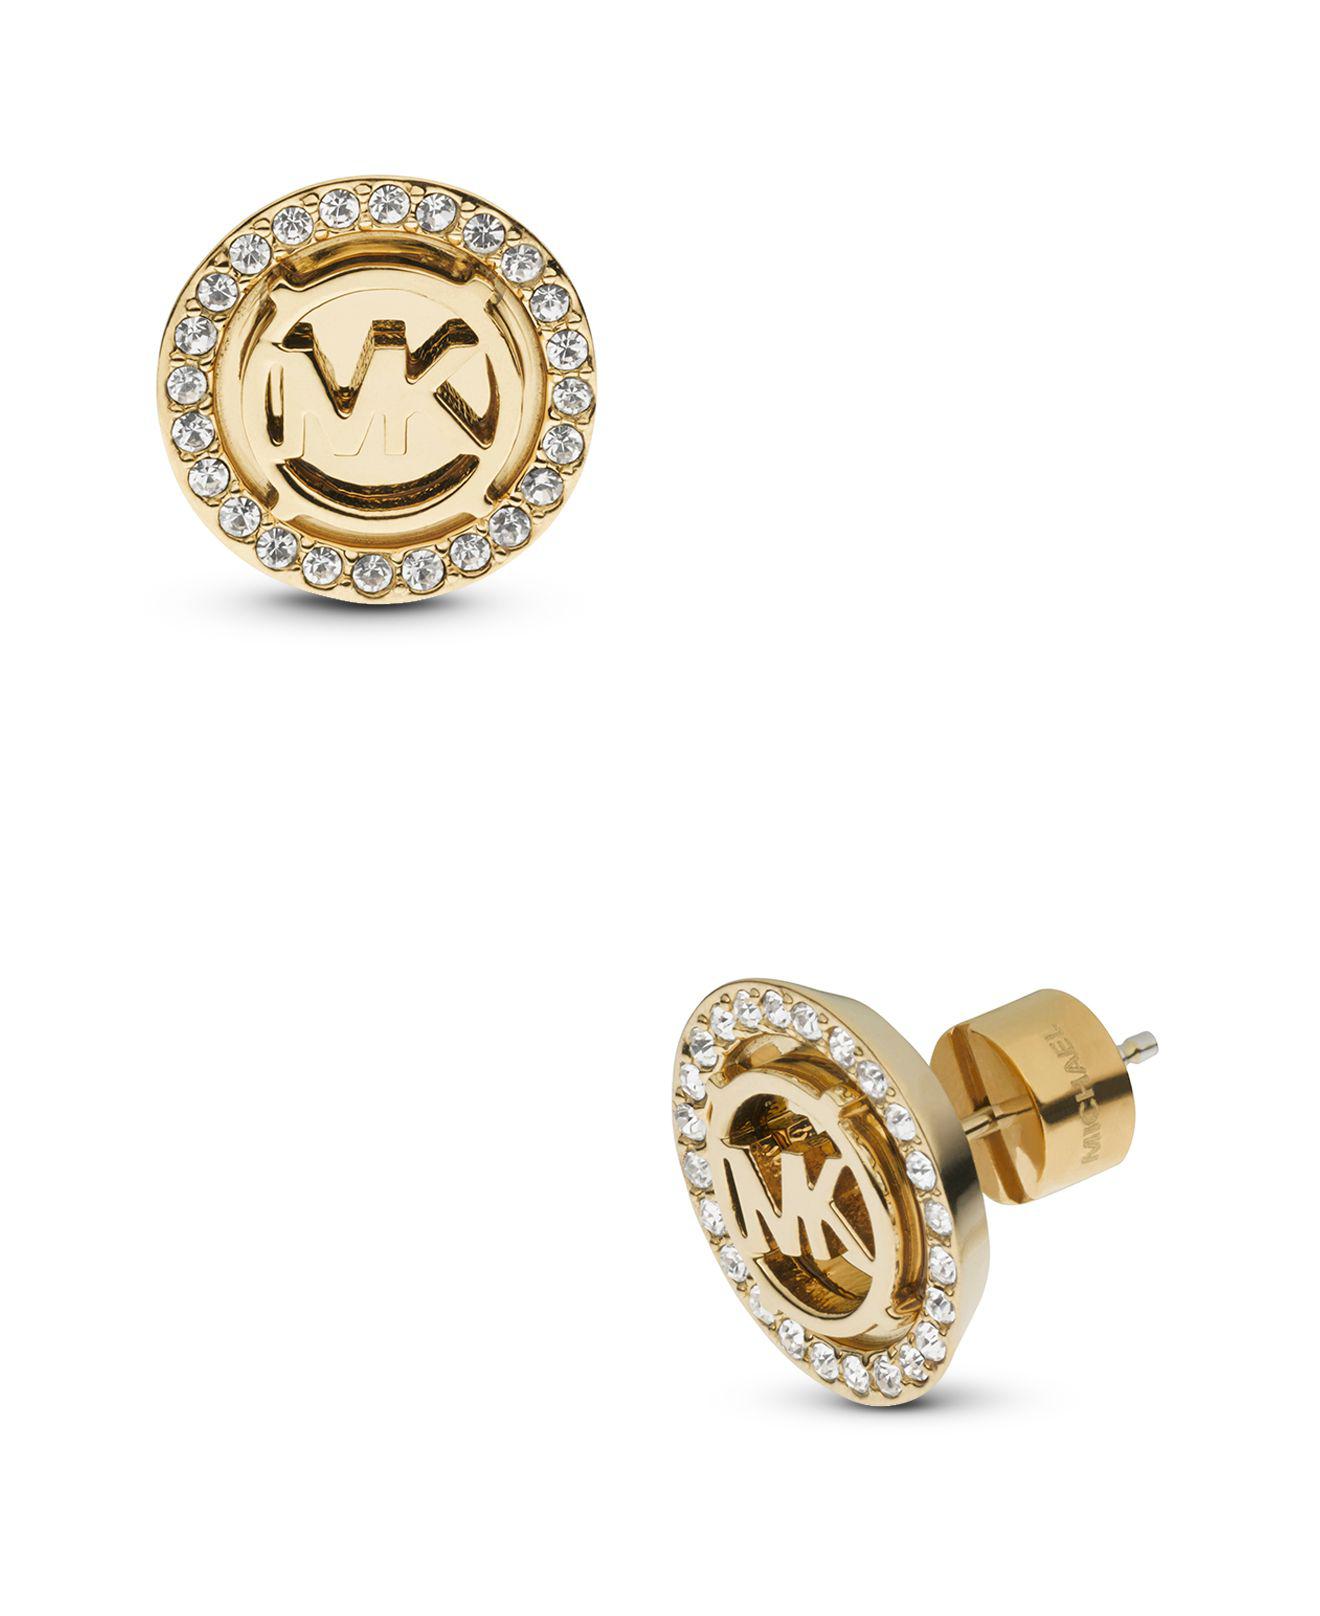 mk earrings macys